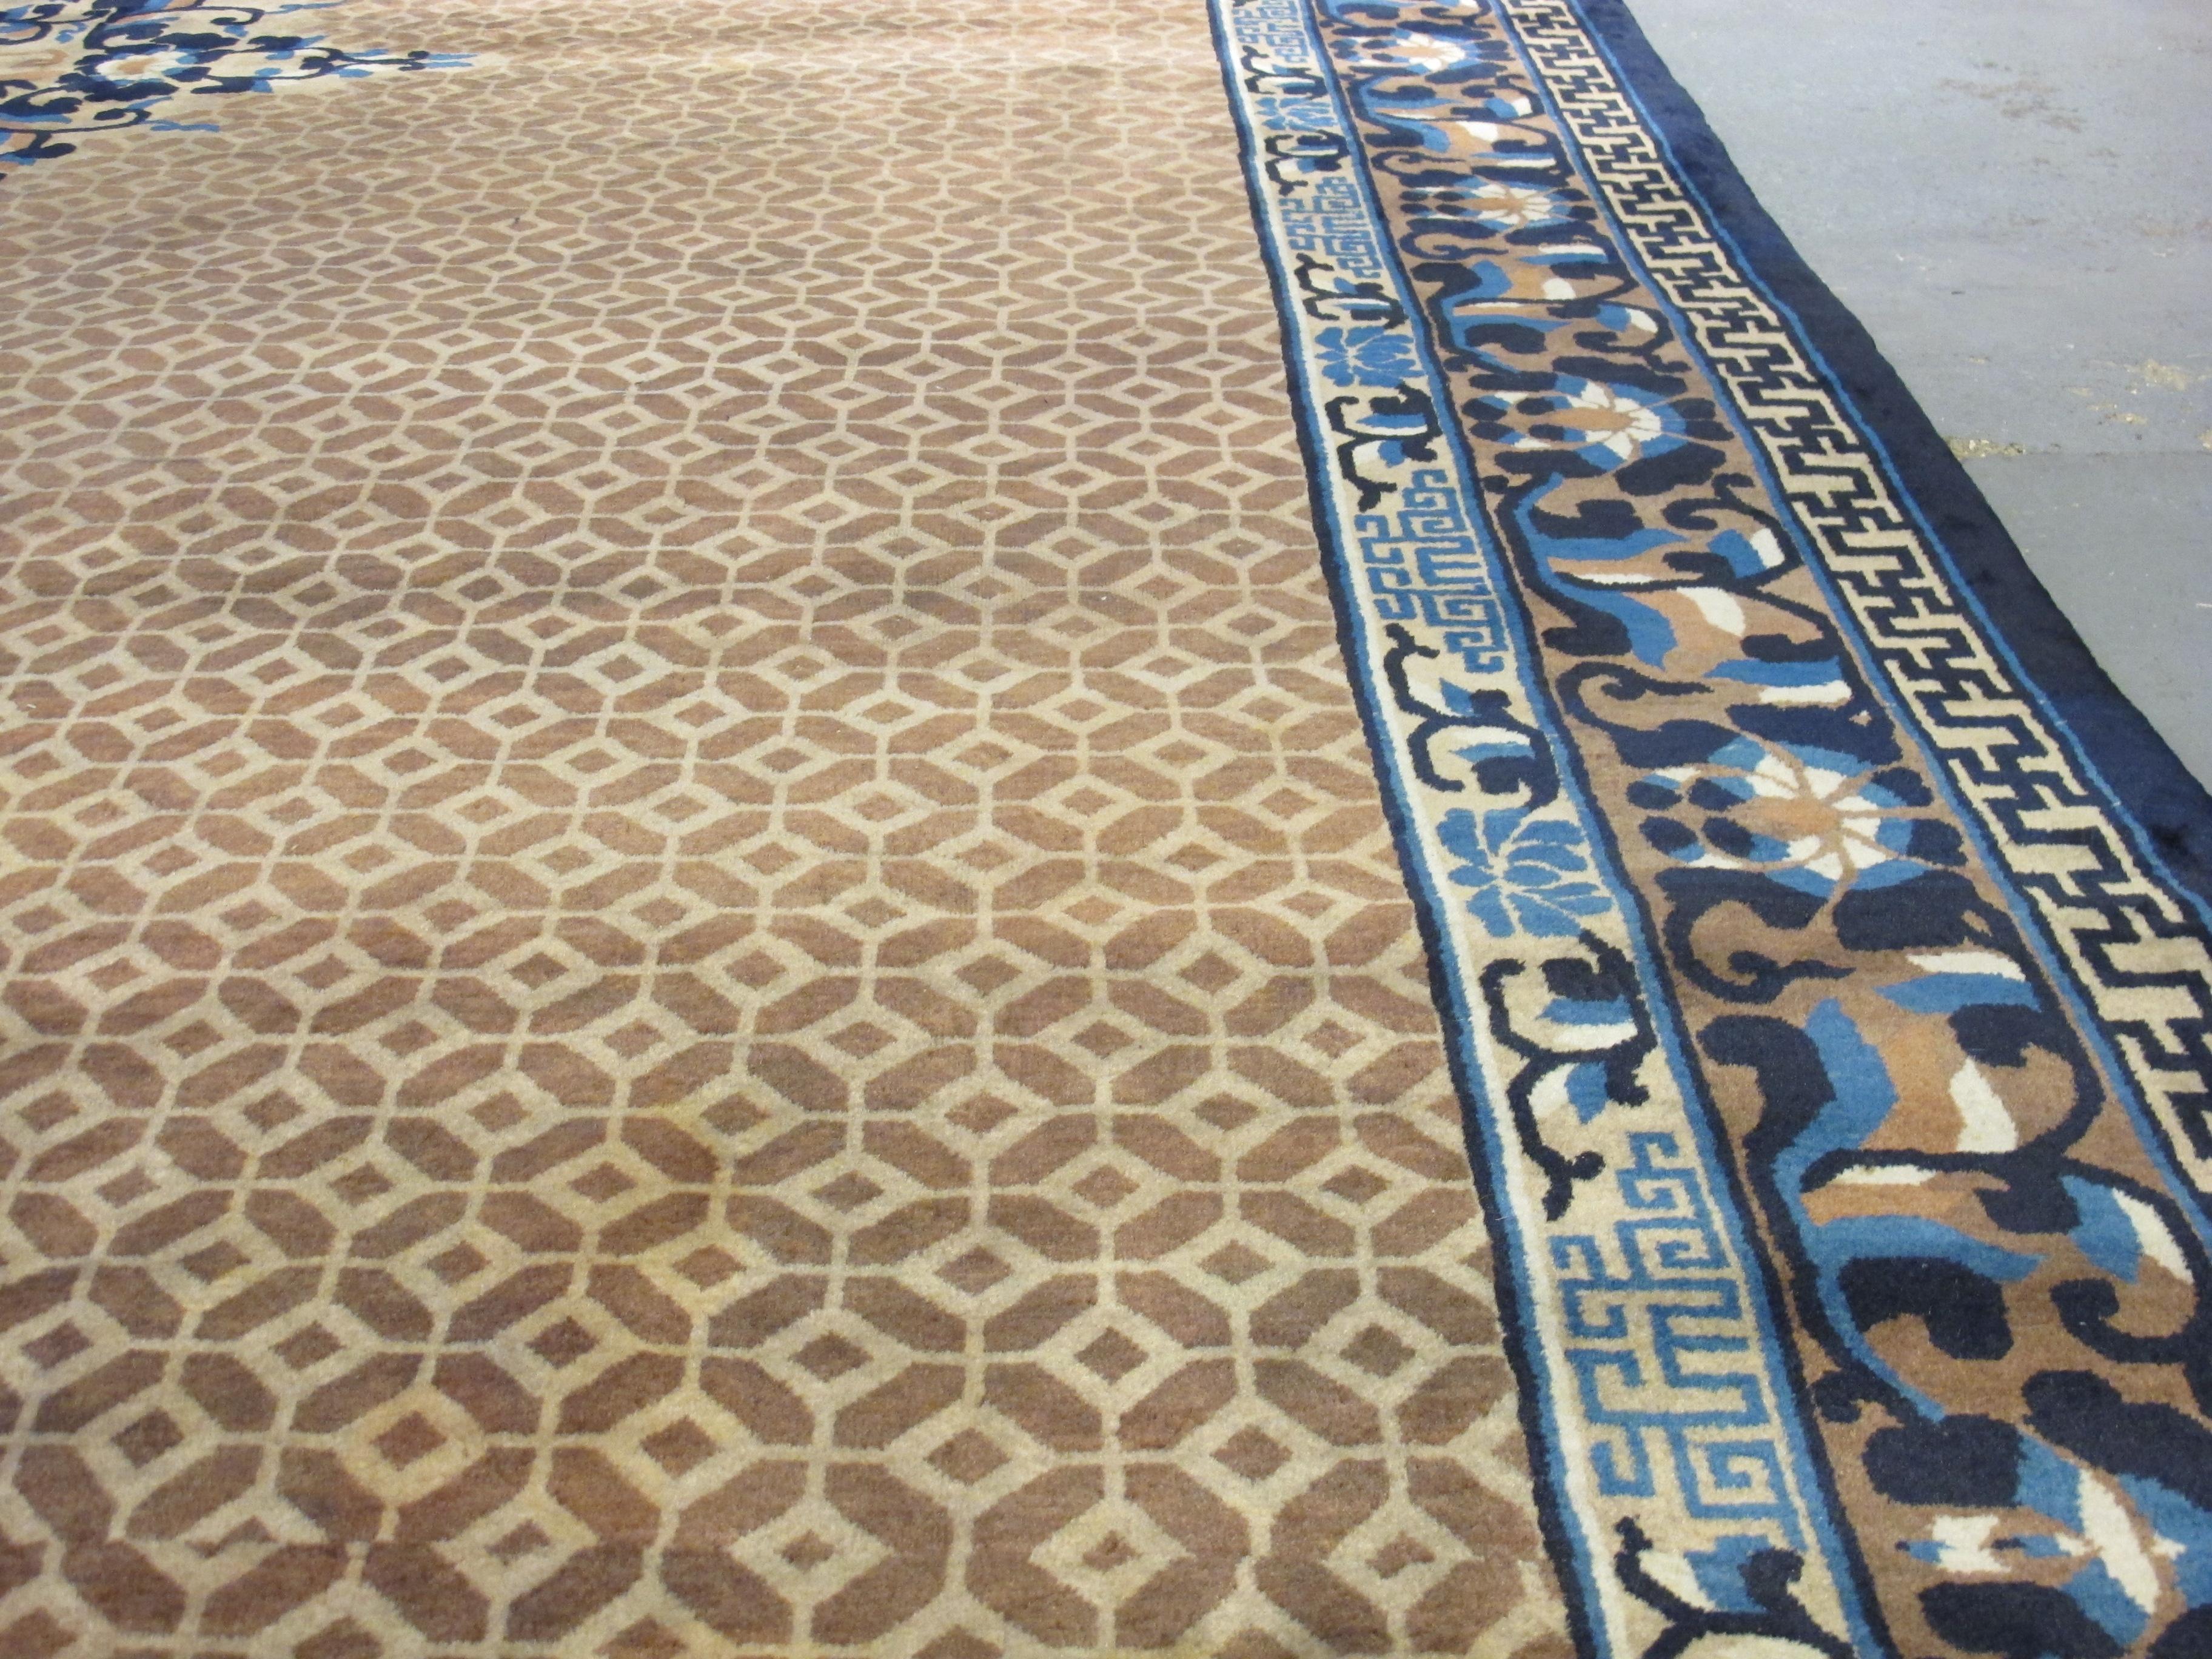 Chinesische Teppiche und Textilien haben eine reiche Geschichte des Knüpfens, die viele Jahrhunderte zurückreicht, insbesondere in der nördlichen Region Ningxia. Als diese Stücke um die Wende zum 20. Jahrhundert die Aufmerksamkeit der